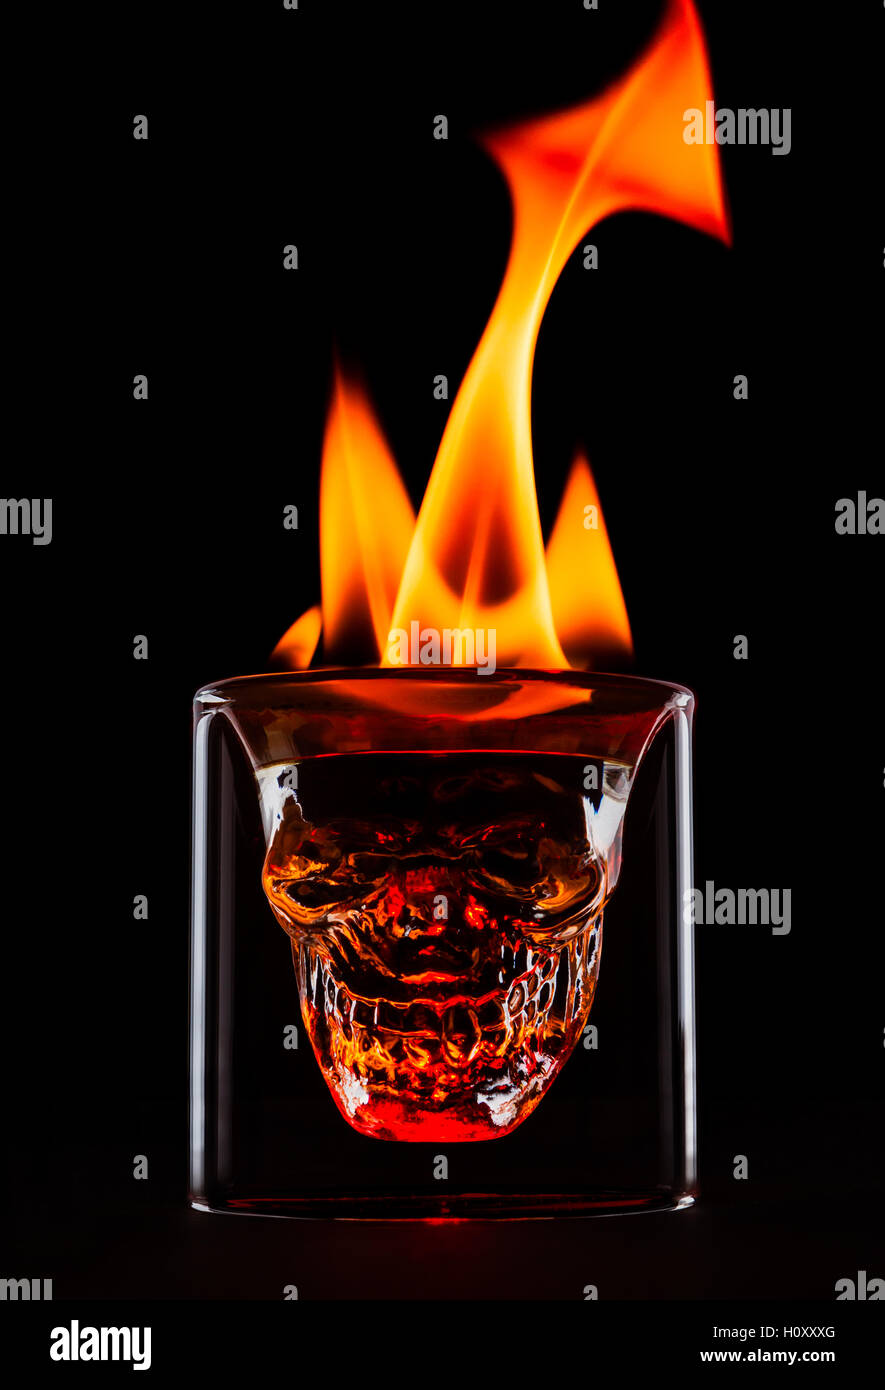 Schädel-Form-Glas mit Flammen auf der Oberseite. Einzelnes Objekt auf schwarzem Hintergrund. Feuer als die Form, Schwanz und Hörner. Dunkel und stimmungsvolle Bild des Getränks. Stockfoto